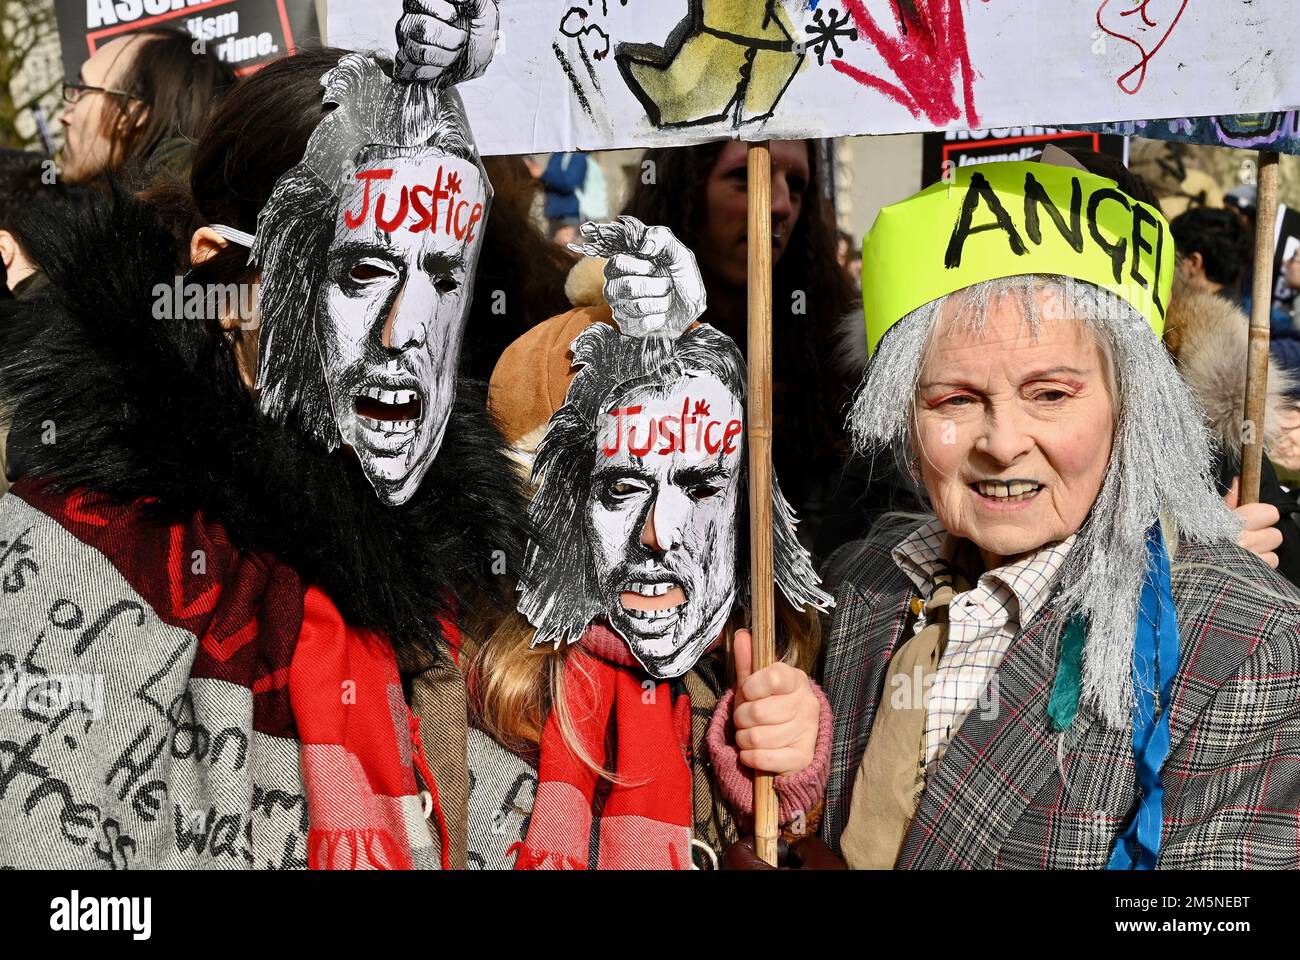 Vivienne Westwood, die Königin der britischen Mode, starb im Alter von 81years Jahren. DATEIBILD. Vivenne Westwood. Auslieferung von Julian Assange-Protest, Whitehall, London. UK Stockfoto